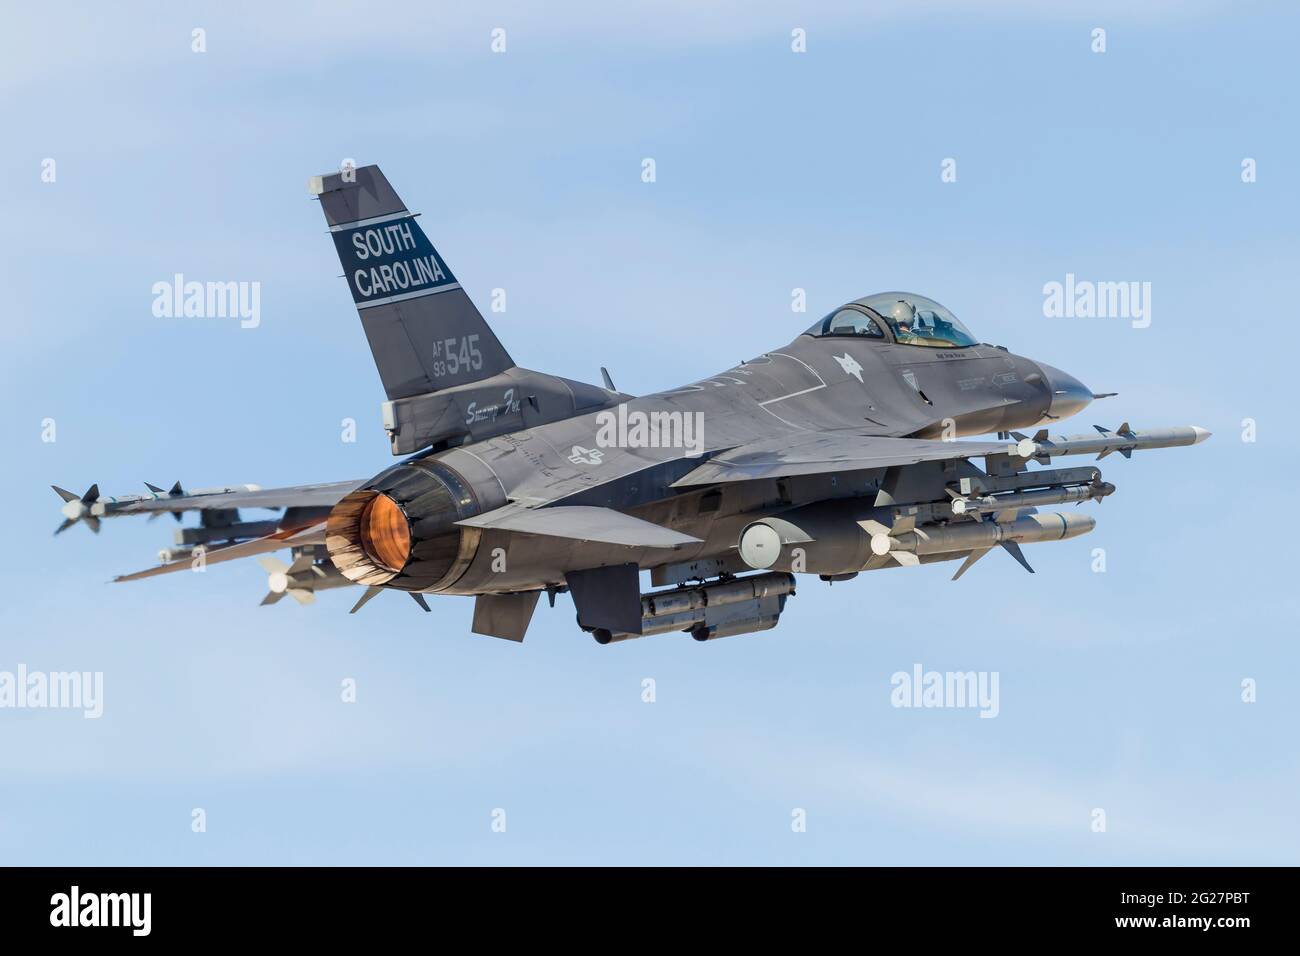 Un F-16CJ de la Guardia Nacional Aérea de Carolina del Sur que combate a Falcon despegar. Foto de stock